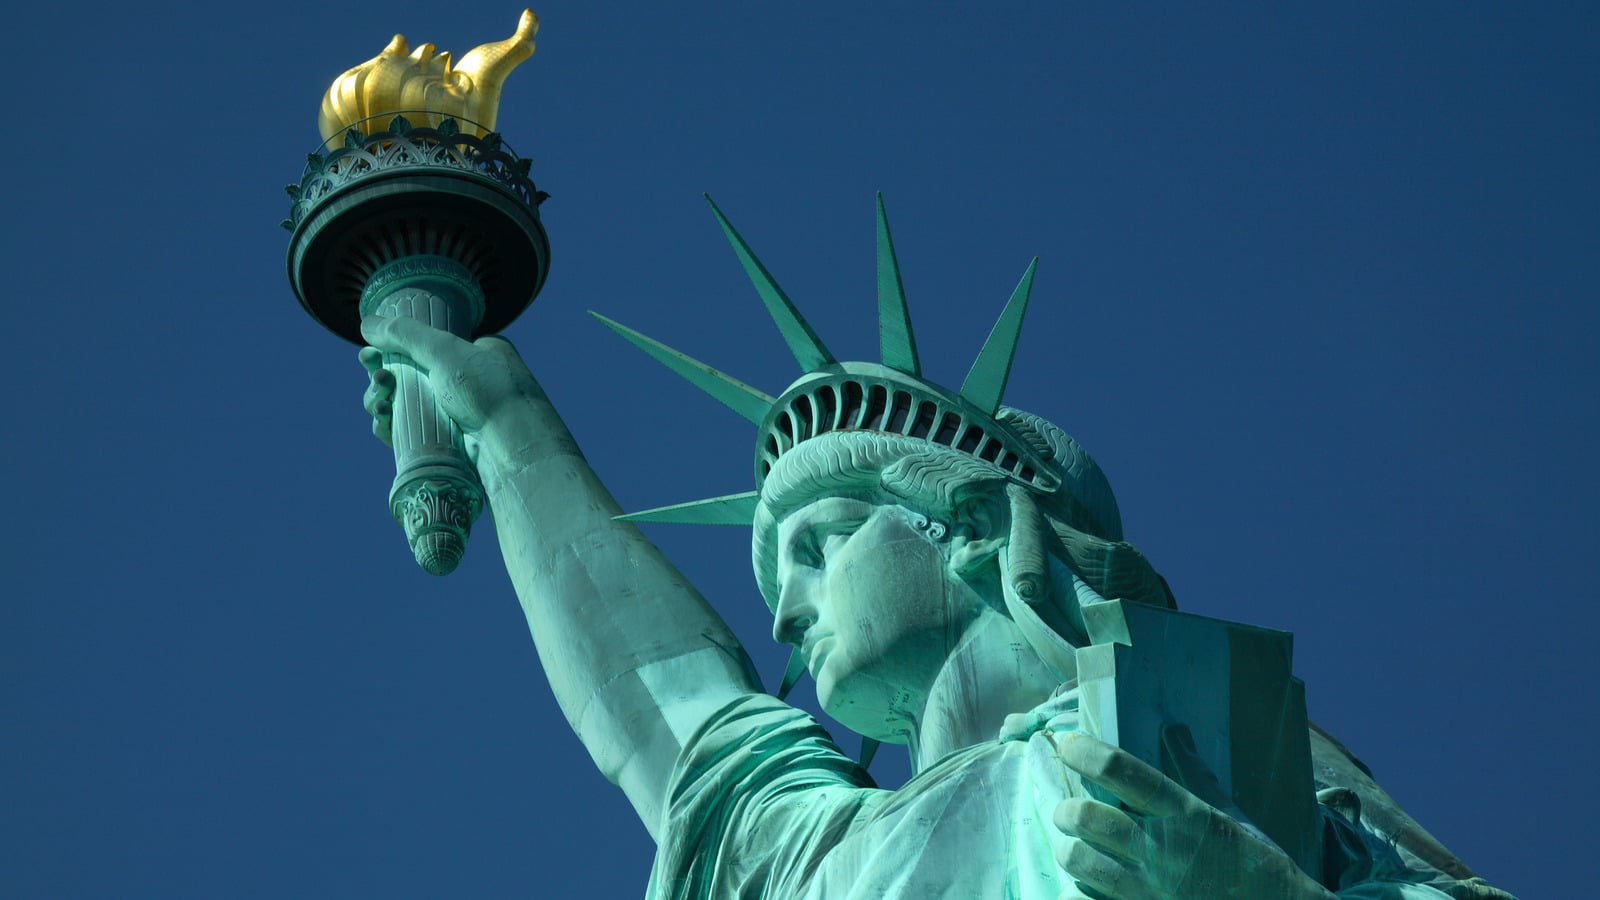 Pourquoi l'accès au flambeau de la Statue de la Liberté est-il interdit ?